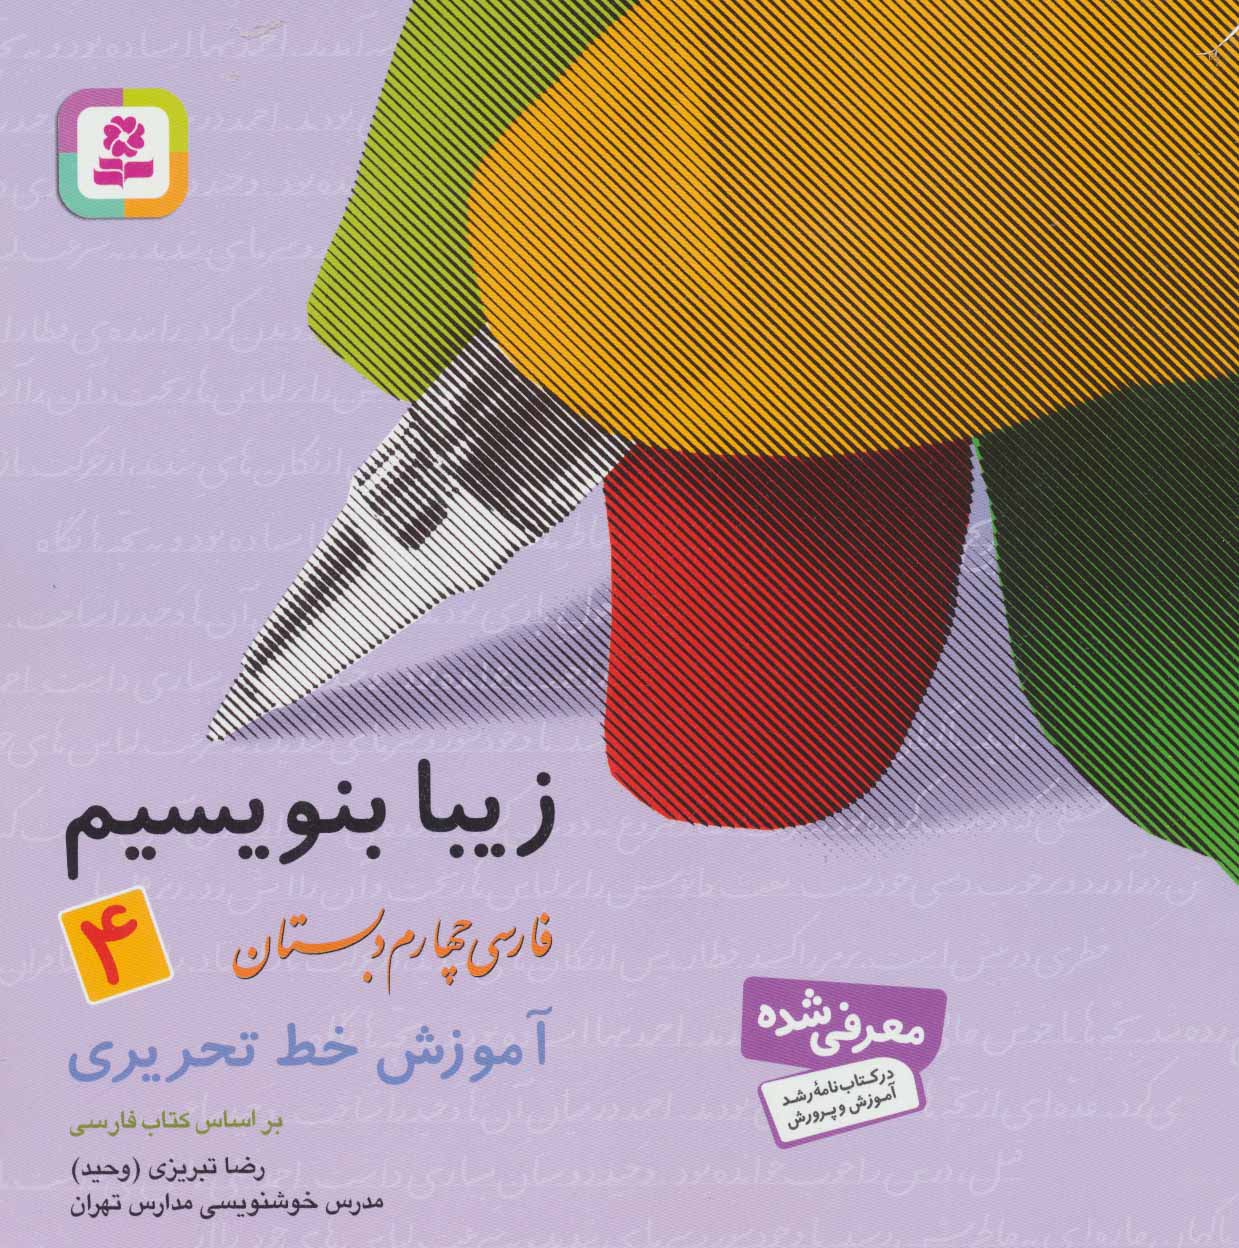 زیبا بنویسیم 4 فارسی چهارم دبستان آموزش خط تحریری(قدیانی)